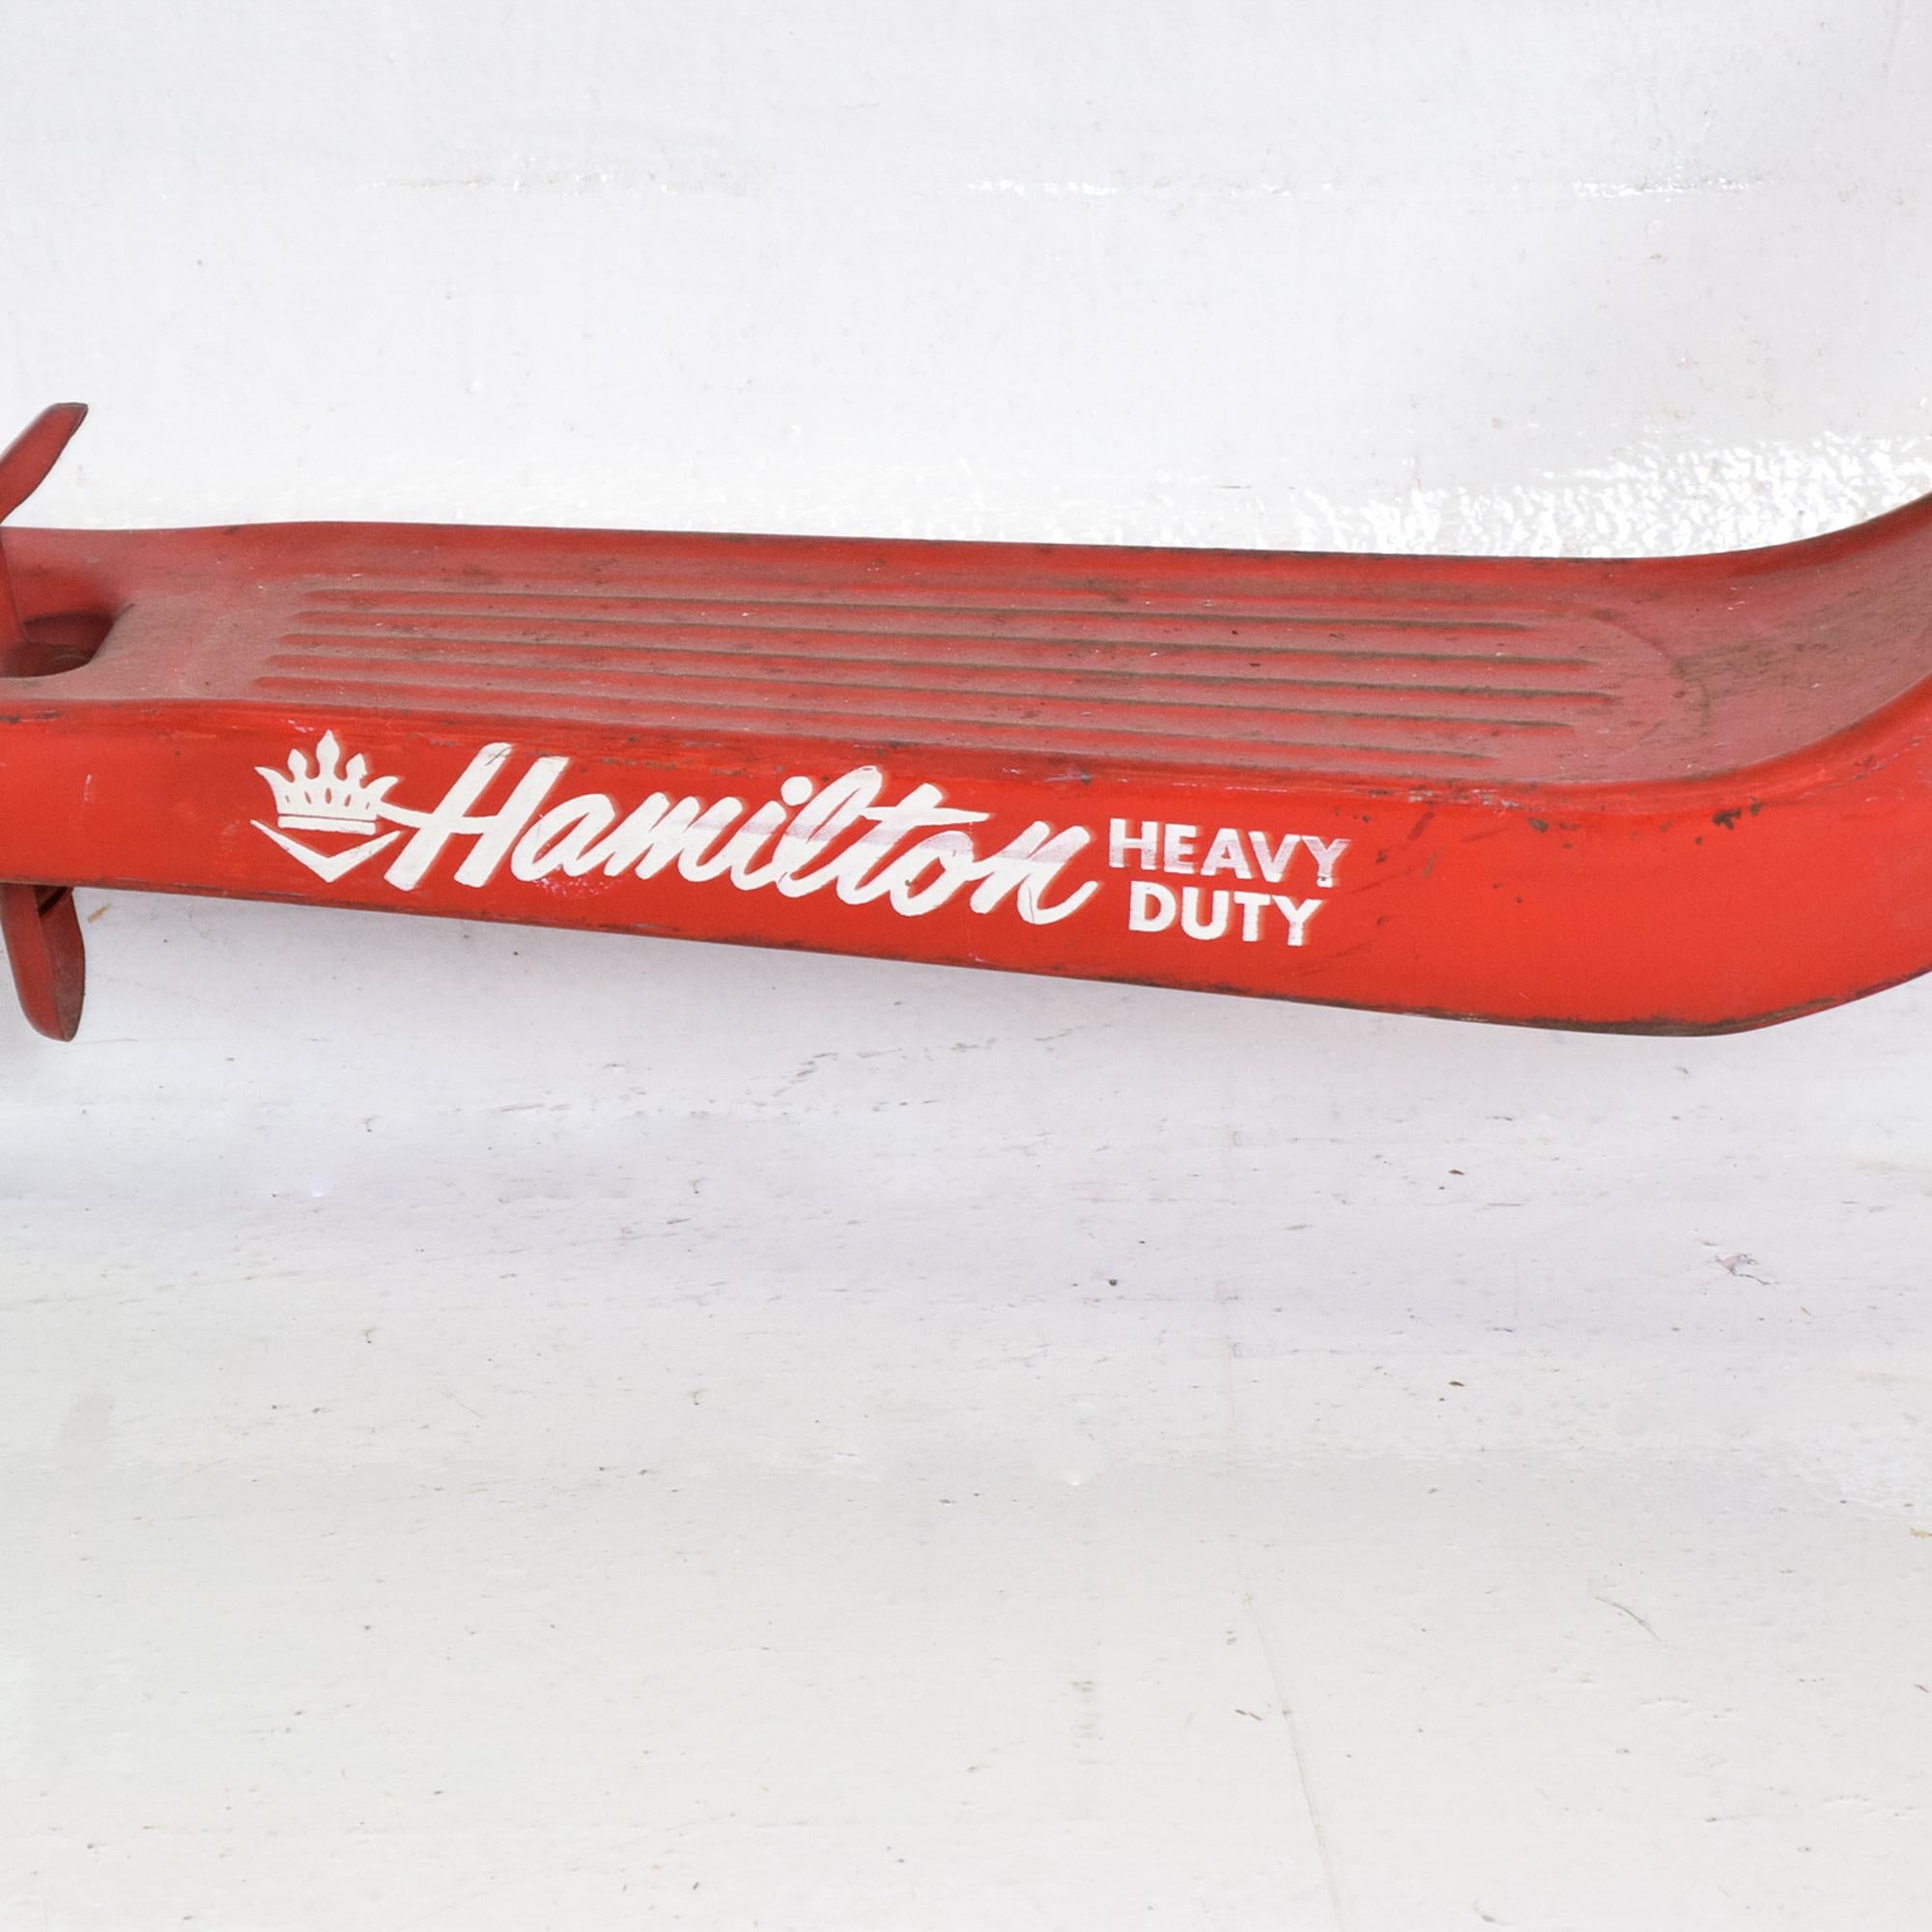 Mid-Century Modern Hamilton Vintage Snappy Red Scooter Heavy Duty Push Kick Start, 1950s, USA